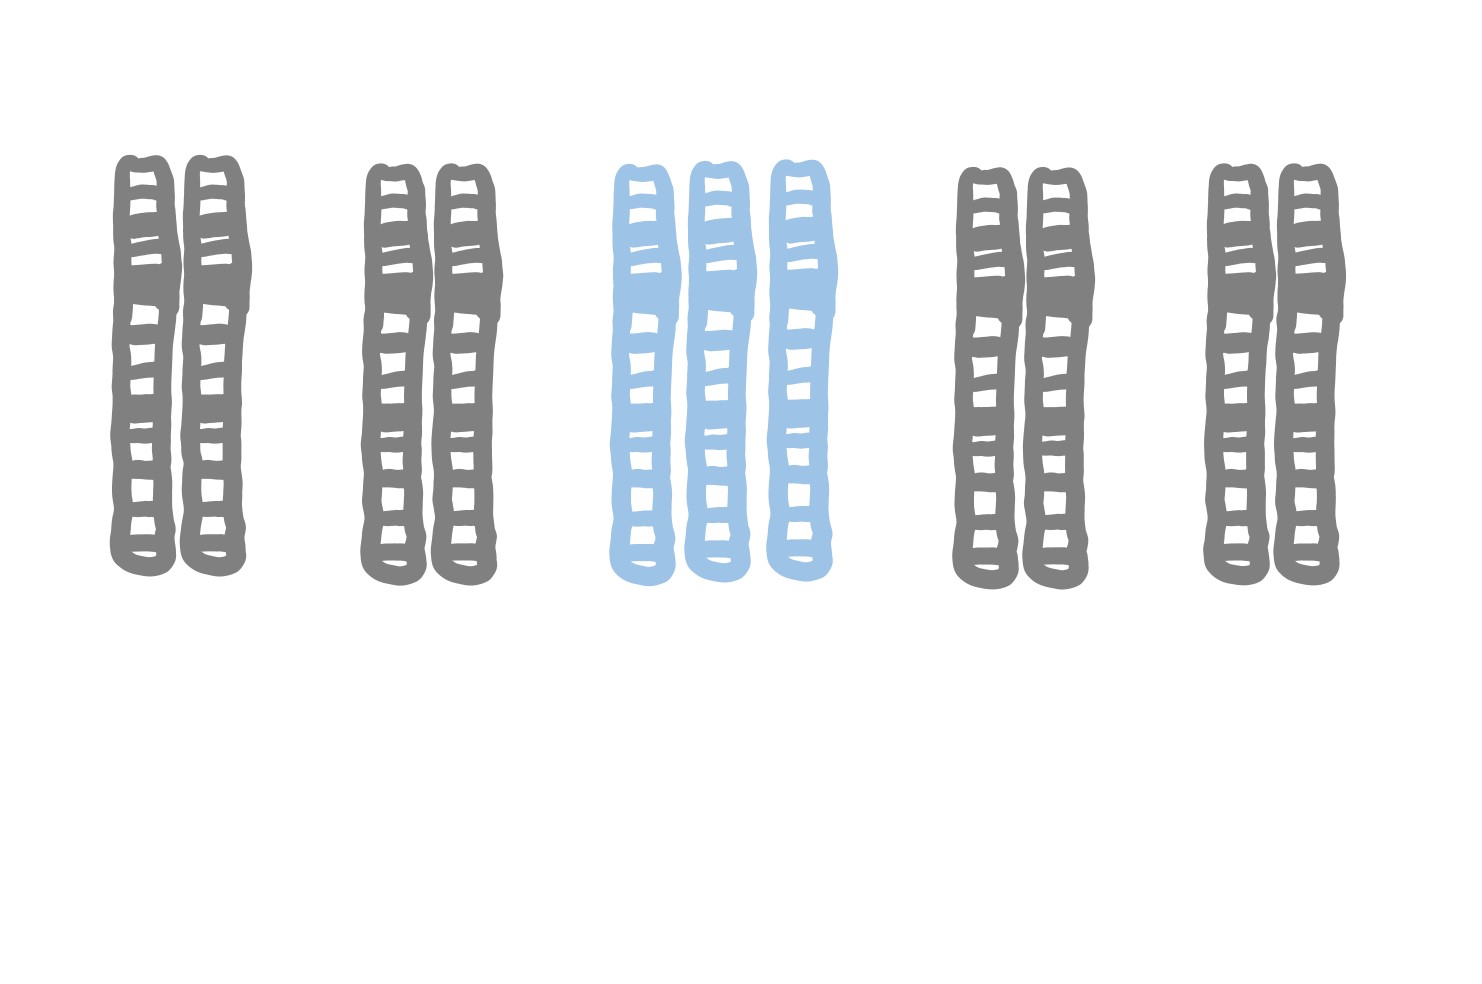 5: Chromosome variation